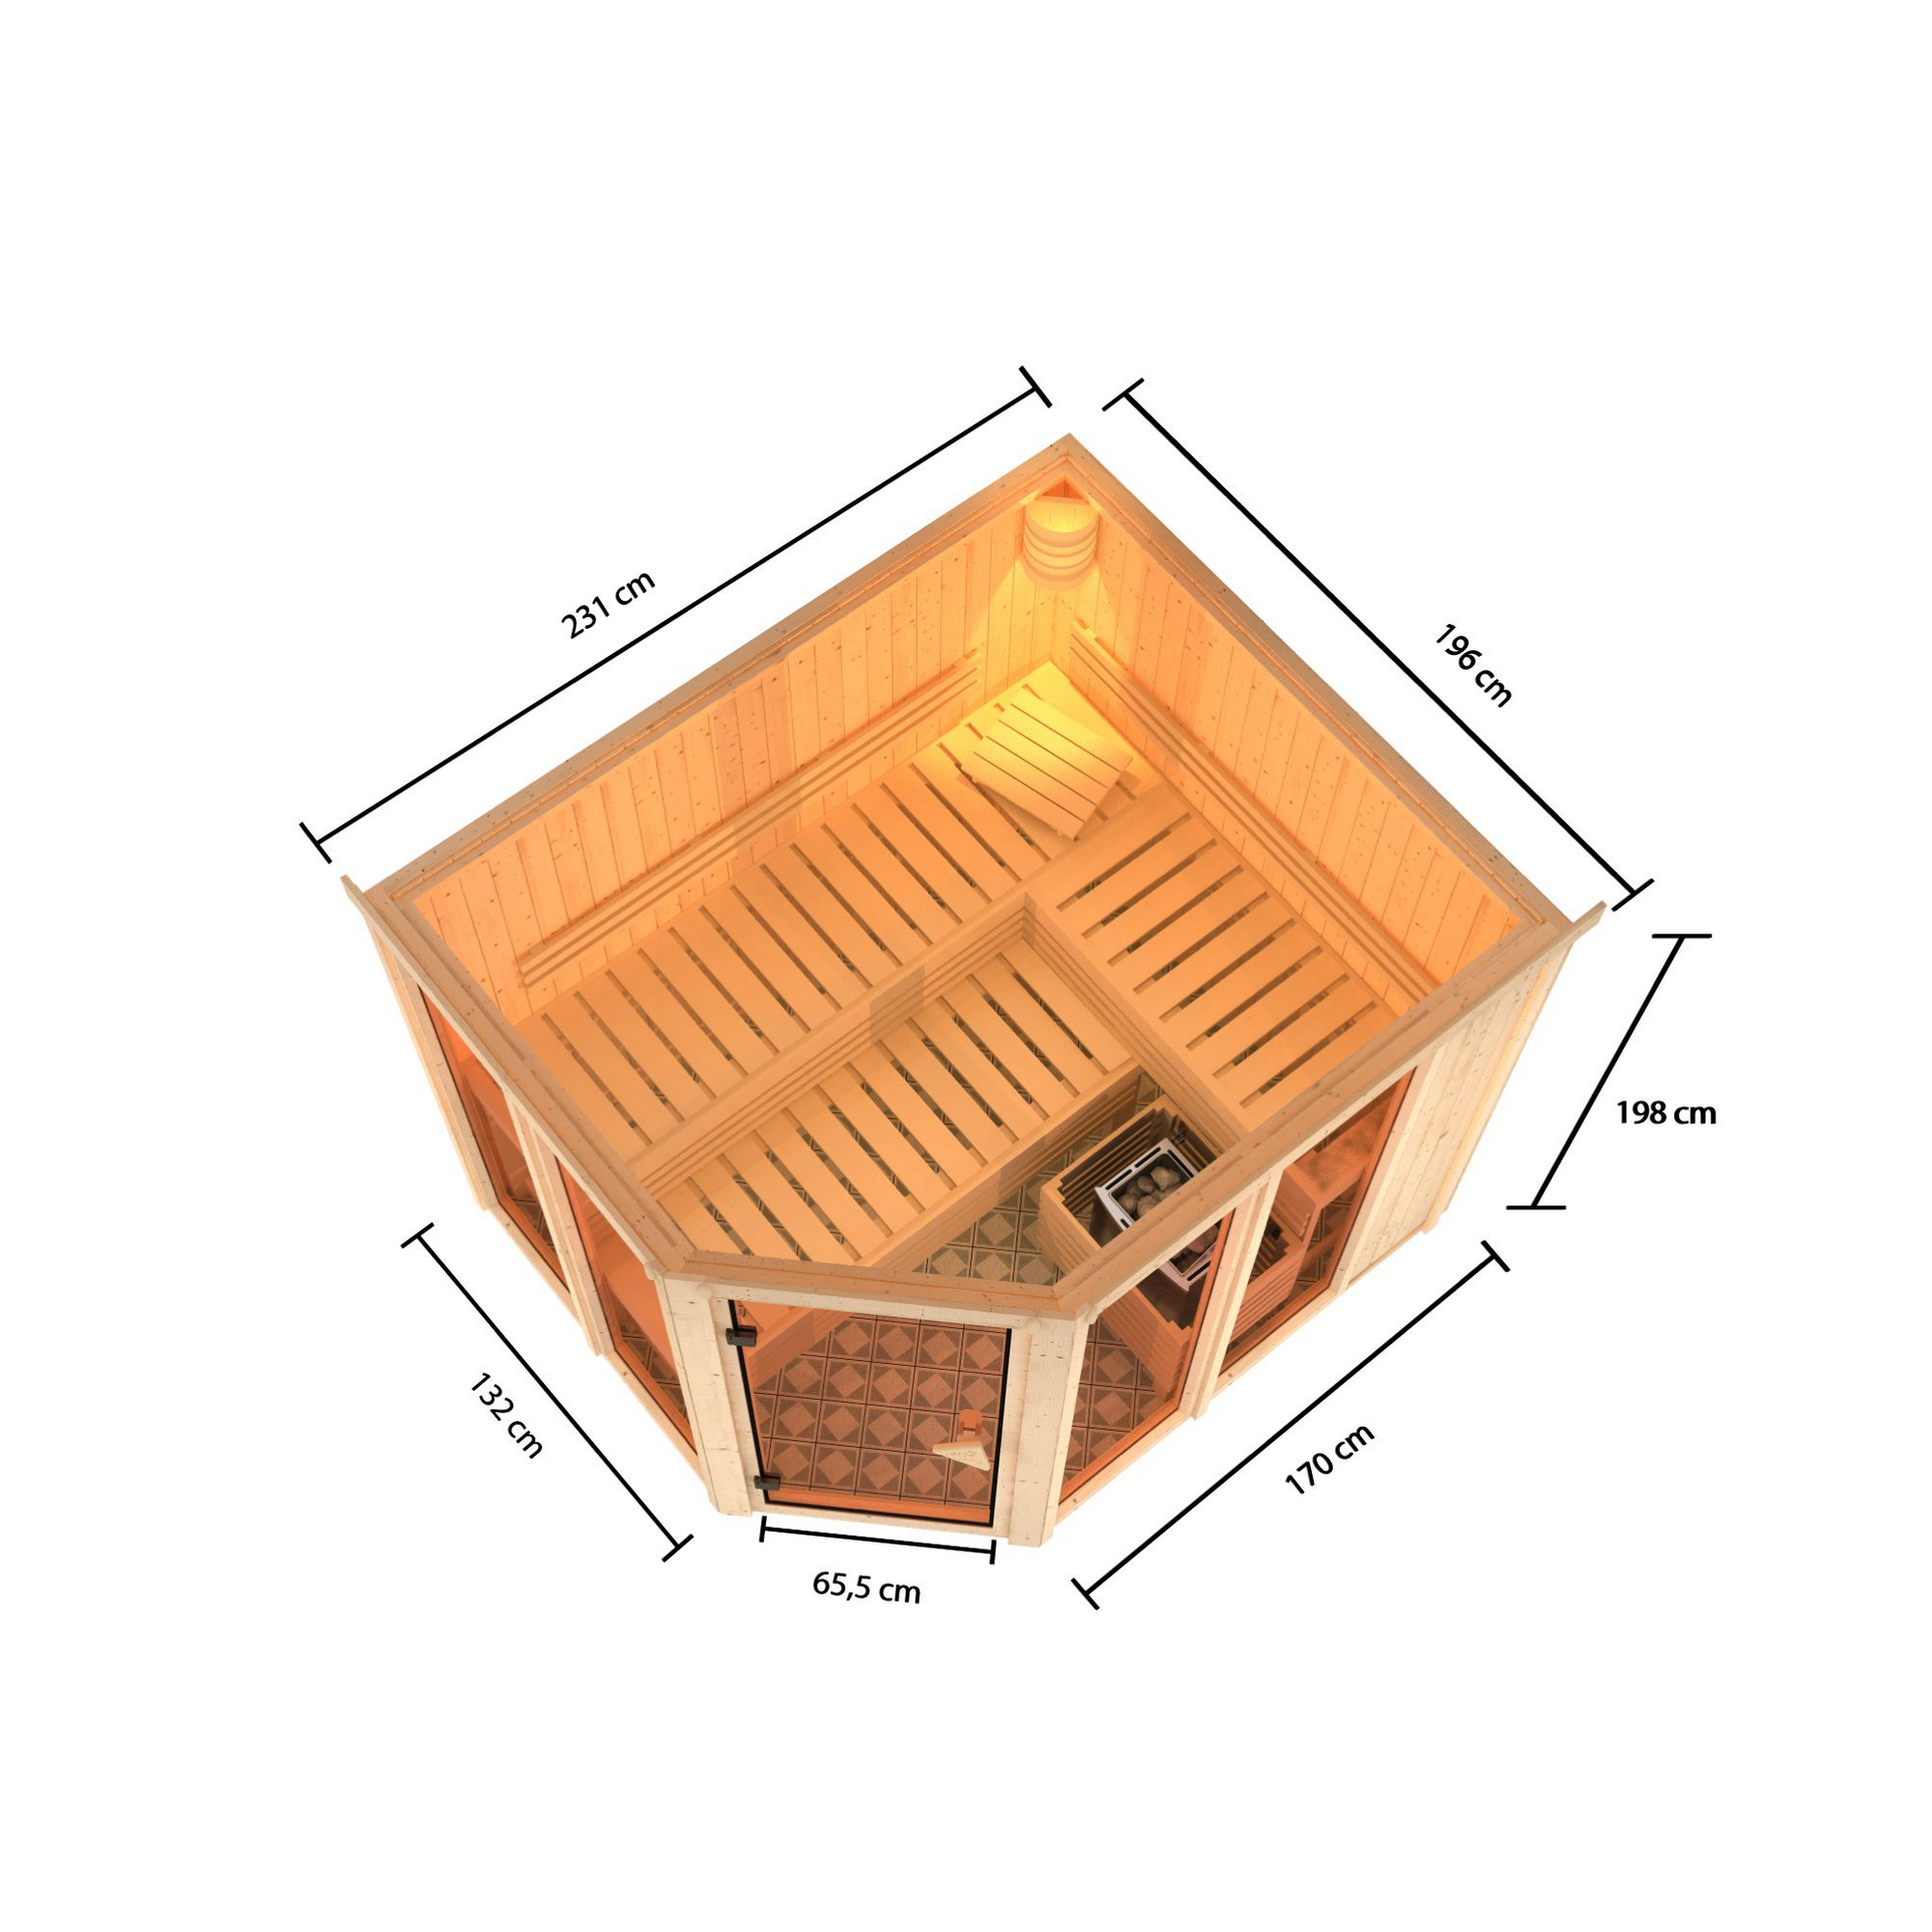 Sauna 'Ariadna 3' naturbelassen mit bronzierter Tür 9 kW Bio-Ofen mit externe Steuerung 231 x 196 x 198 cm + product picture